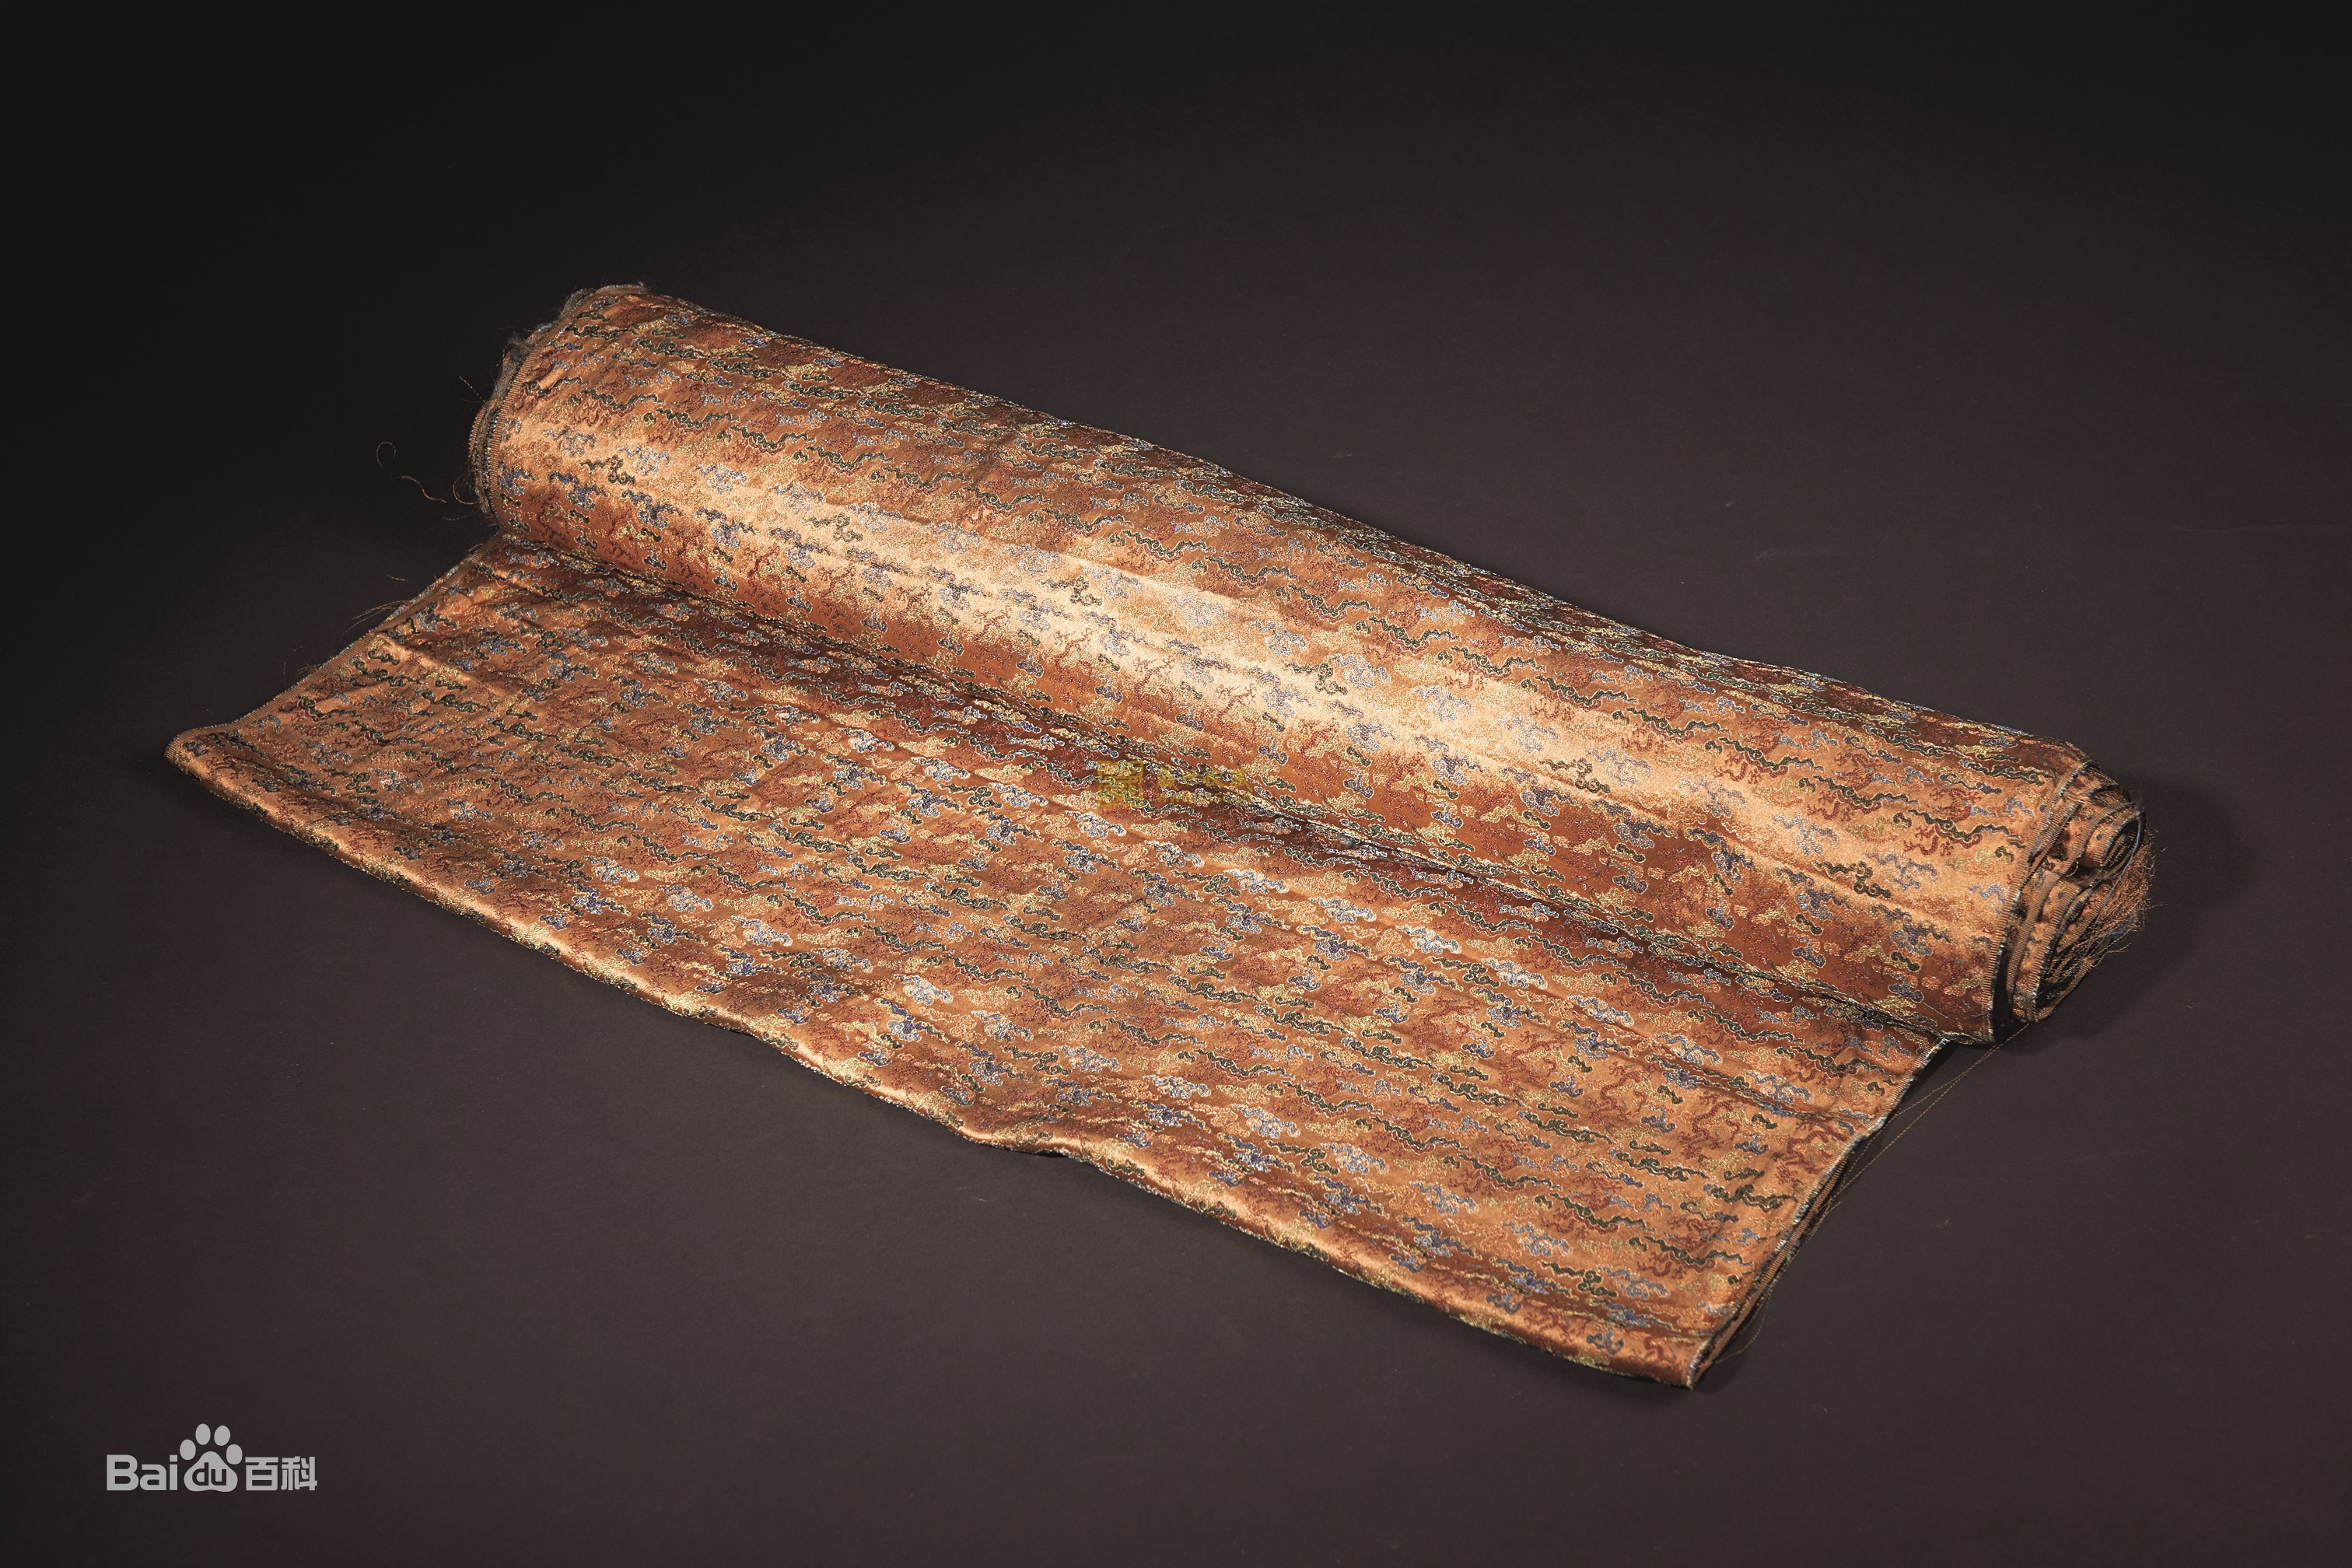 丝绸，一种纺织品，用蚕丝或合成纤维、人造纤维、短丝等织成；用蚕丝或人造丝纯织或交织而成的织品的总称。